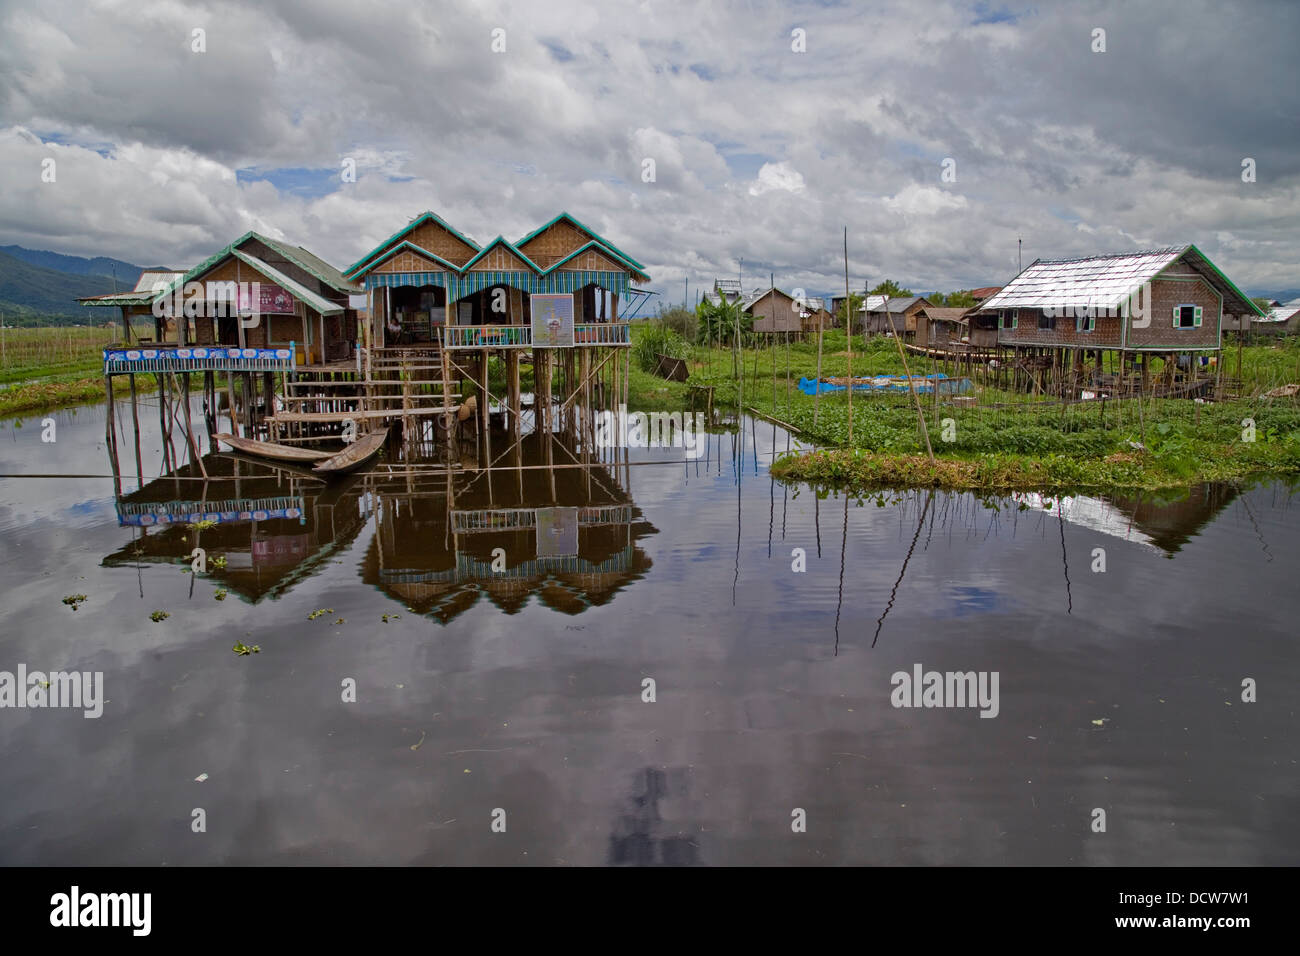 Floating houses on Inle Lake, Myanmar (Burma) Stock Photo